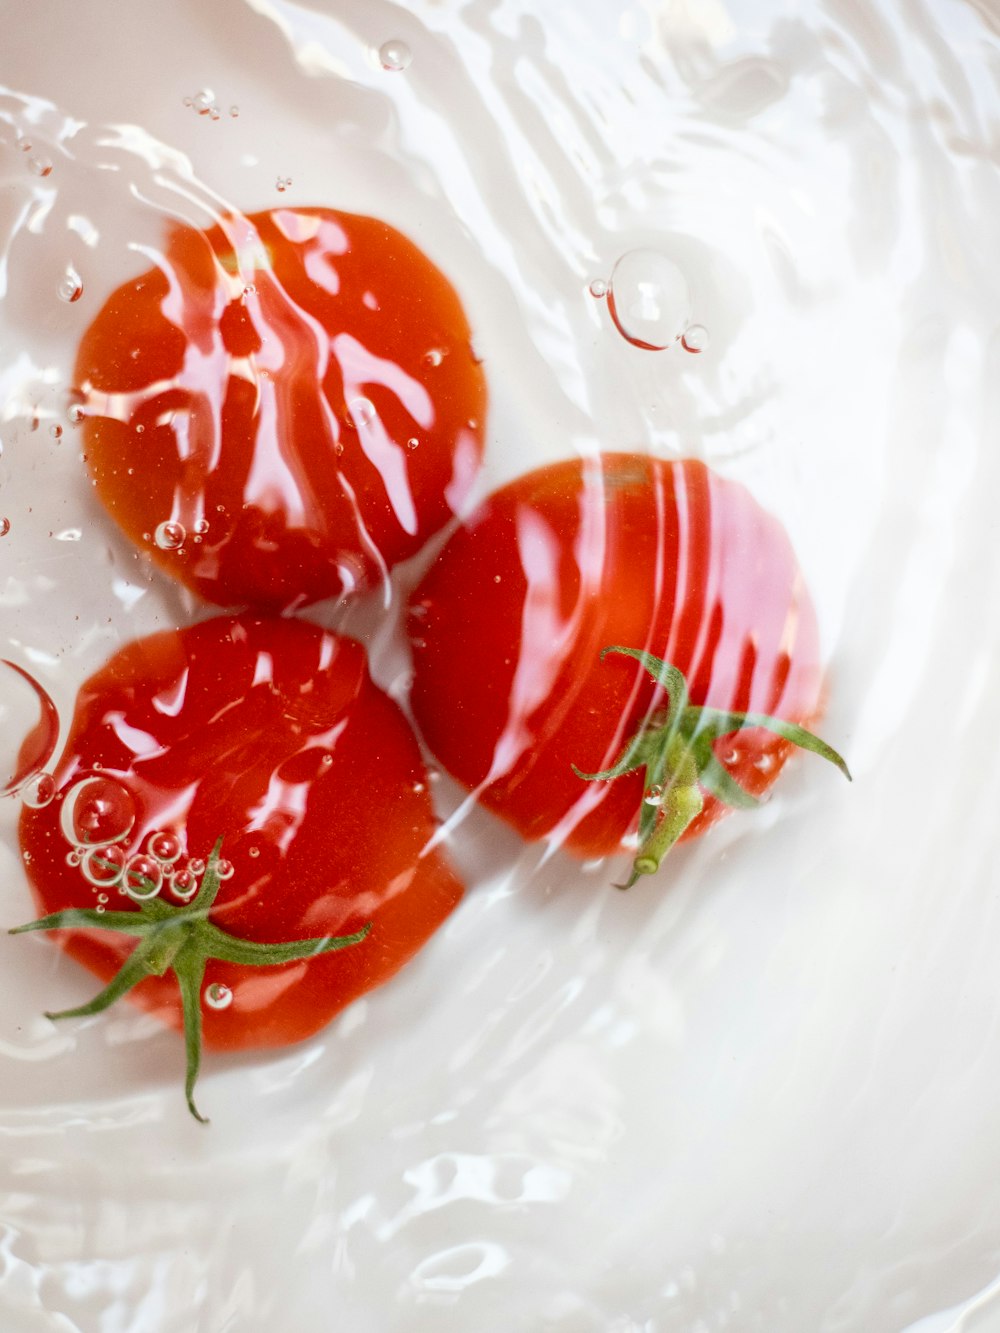 drei rote Tomaten in Wasser